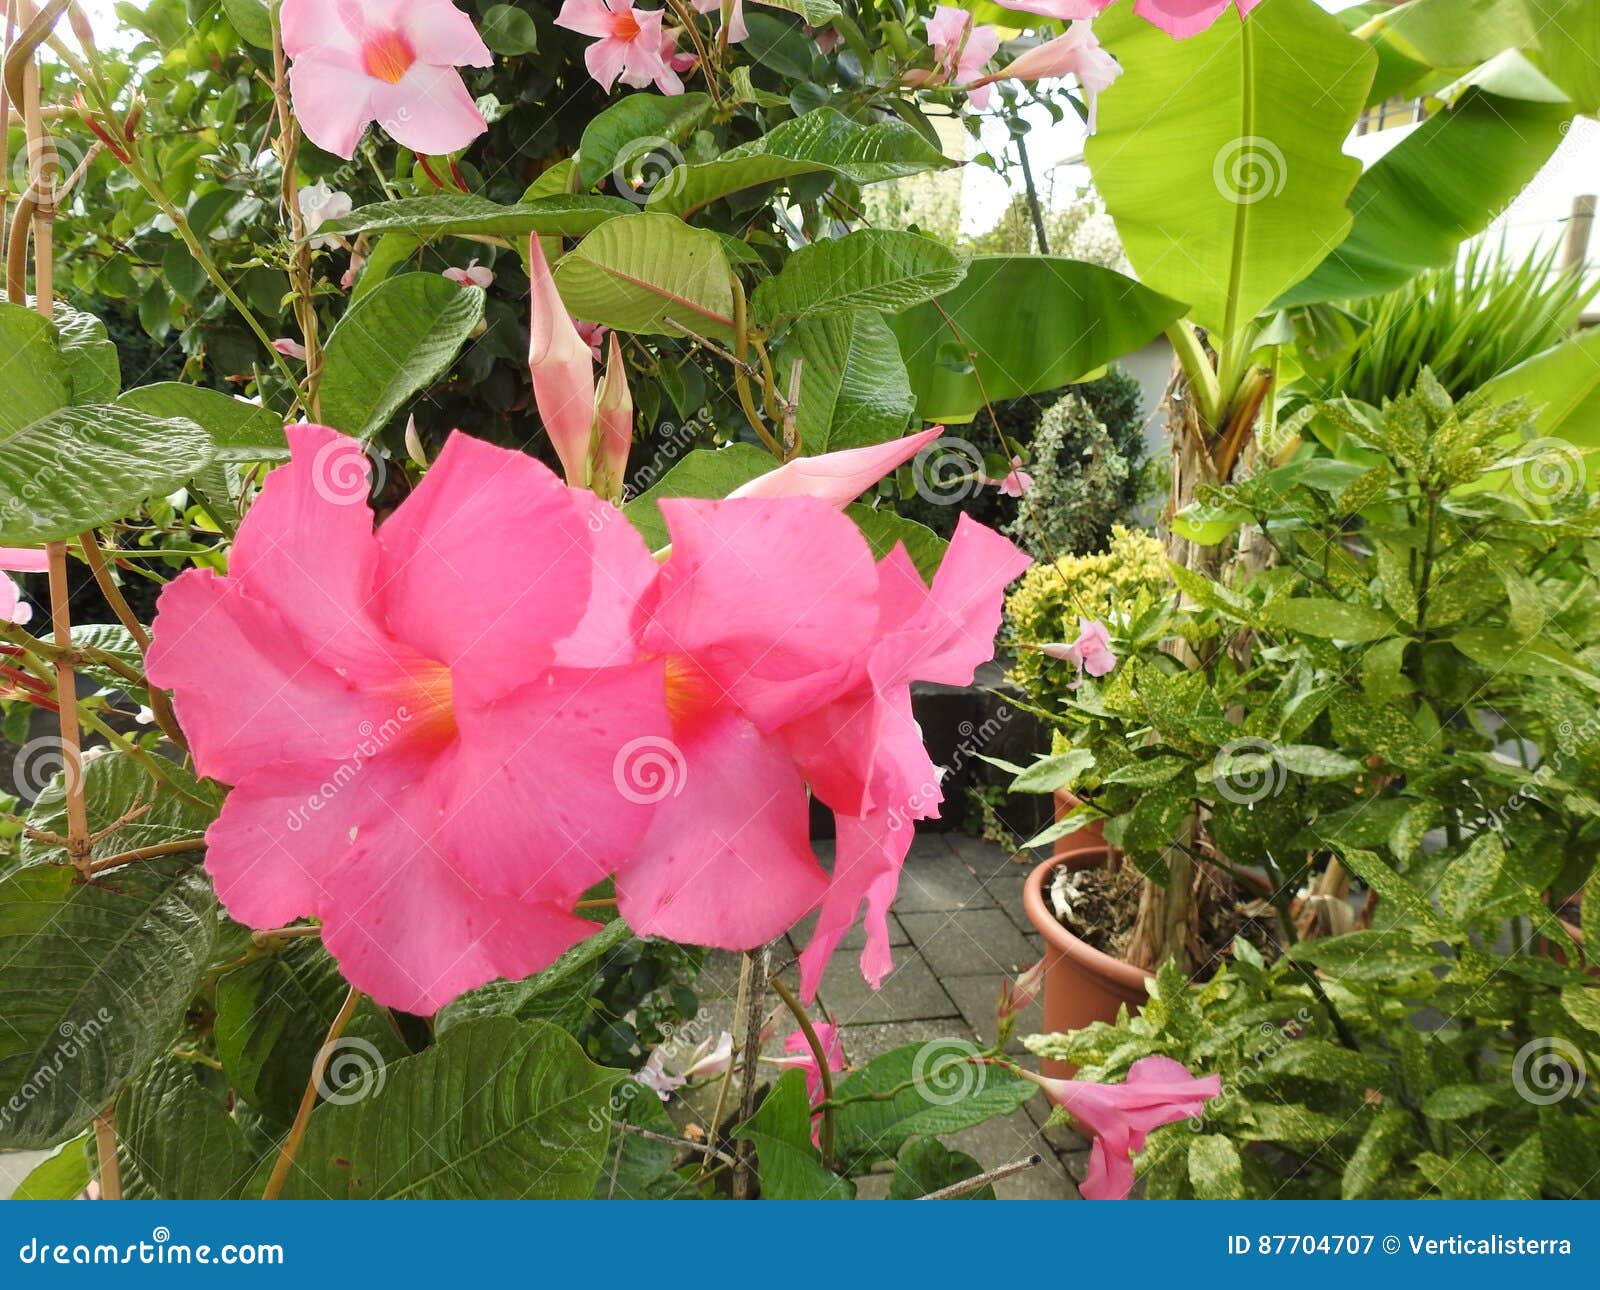 Mandevilla jest rośliną który oszronieją strachy południowy America. Fotografia różowy mandevilla jest w kontrascie na dnie ciemnozielony ulistnienie